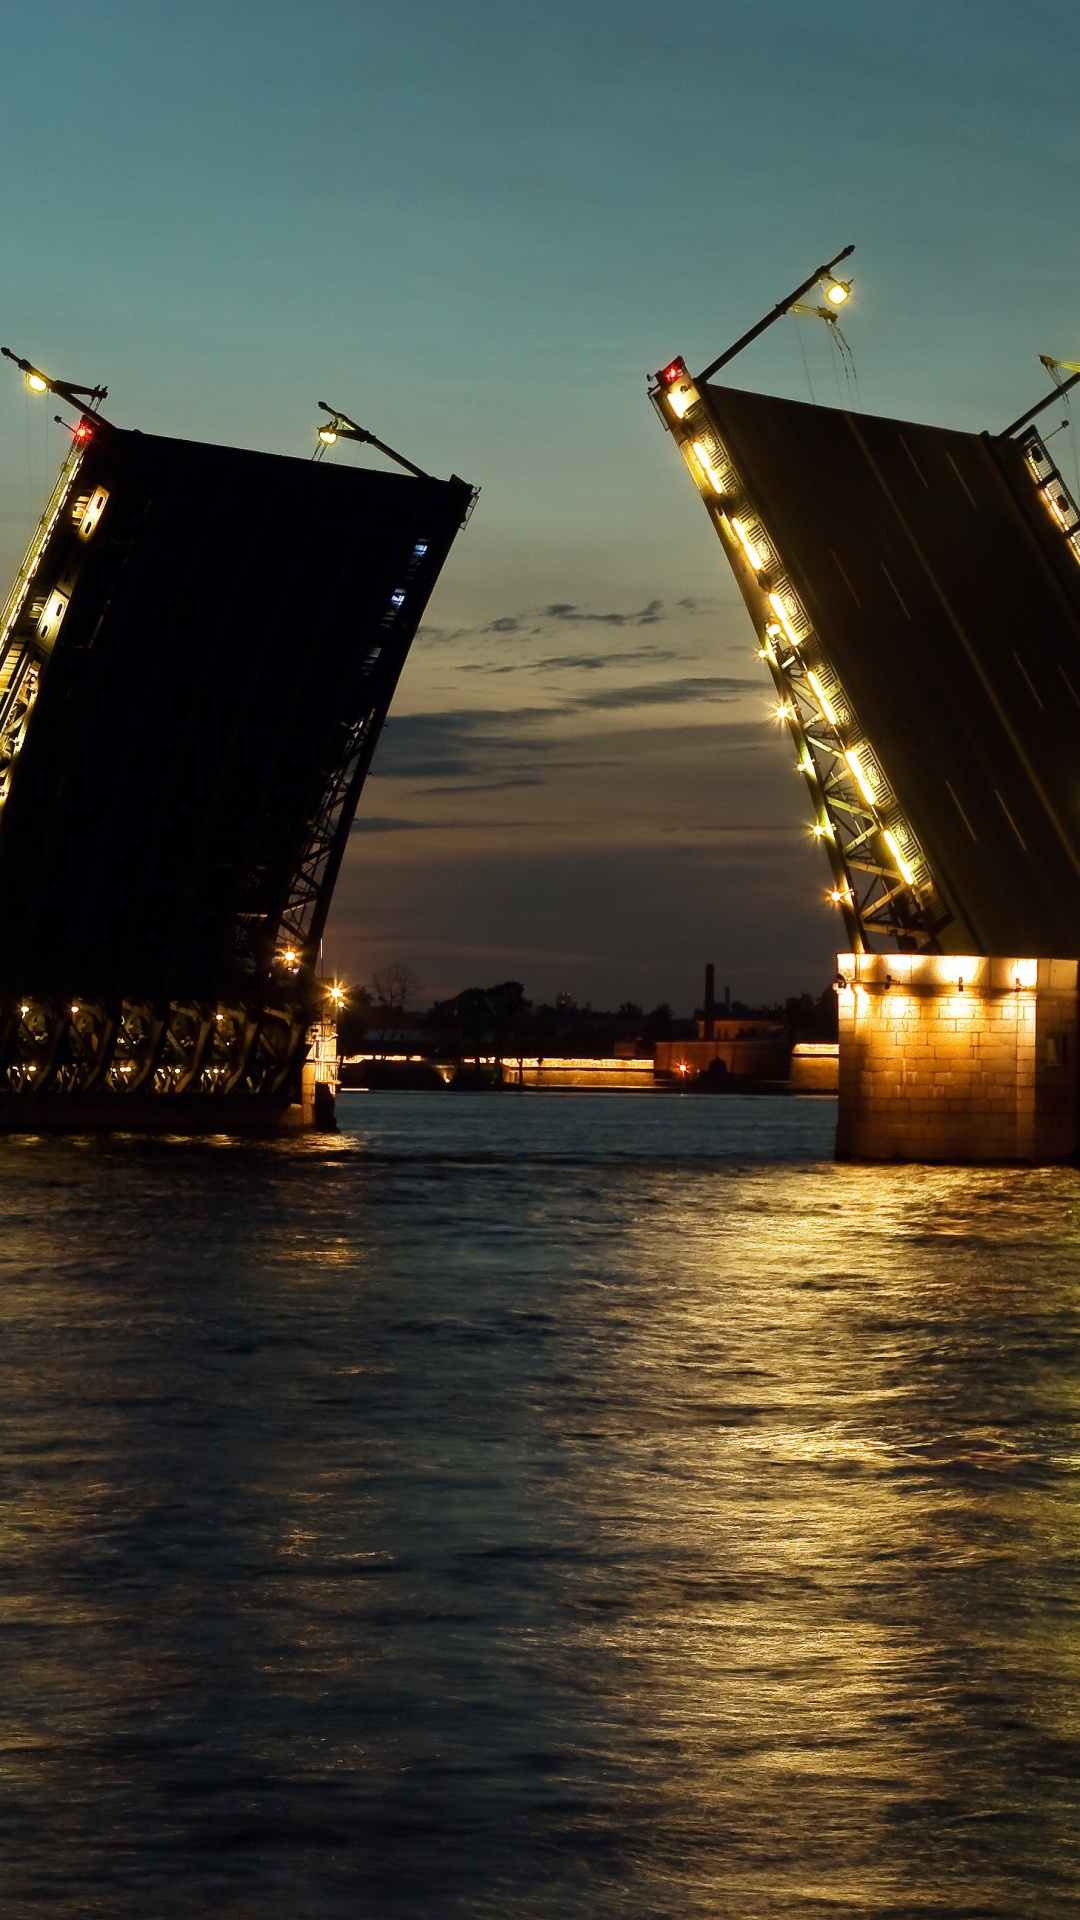 瓦河, 晚上, 可移动座桥, 黄昏, 猩红色的帆 壁纸 1080x1920 允许